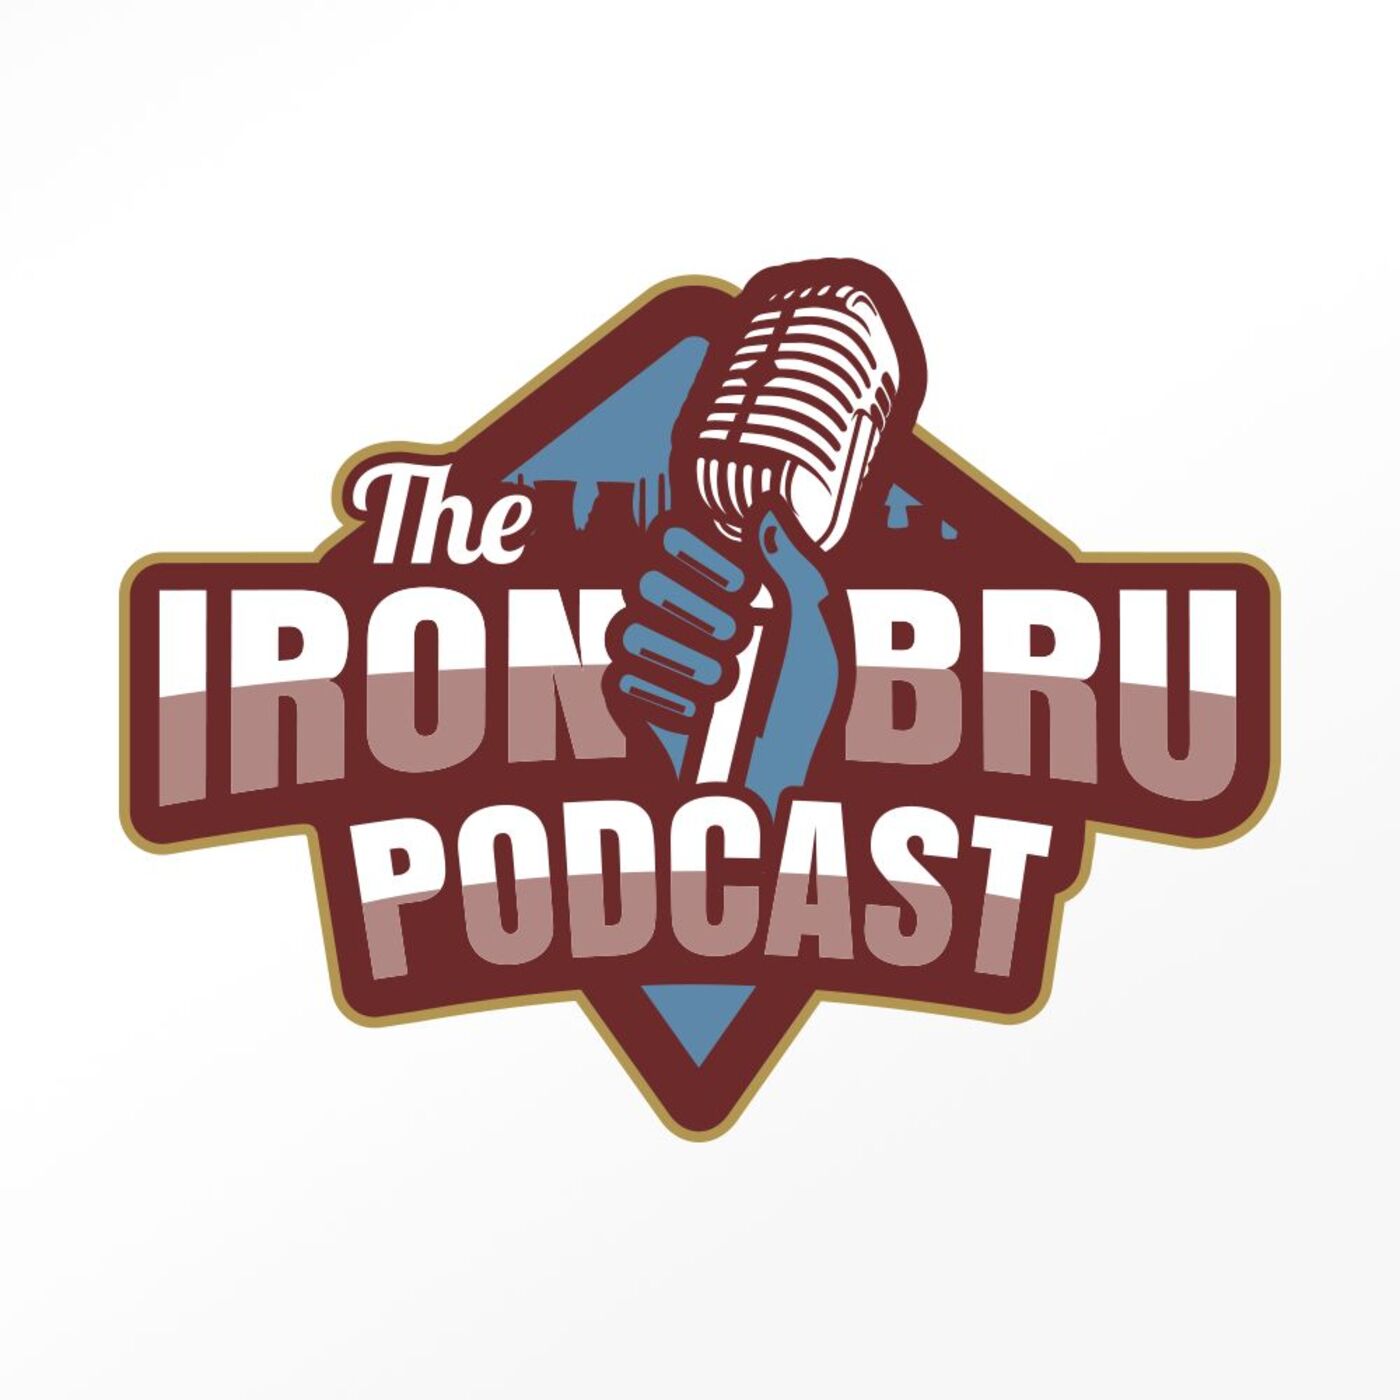 Iron Bru Podcast